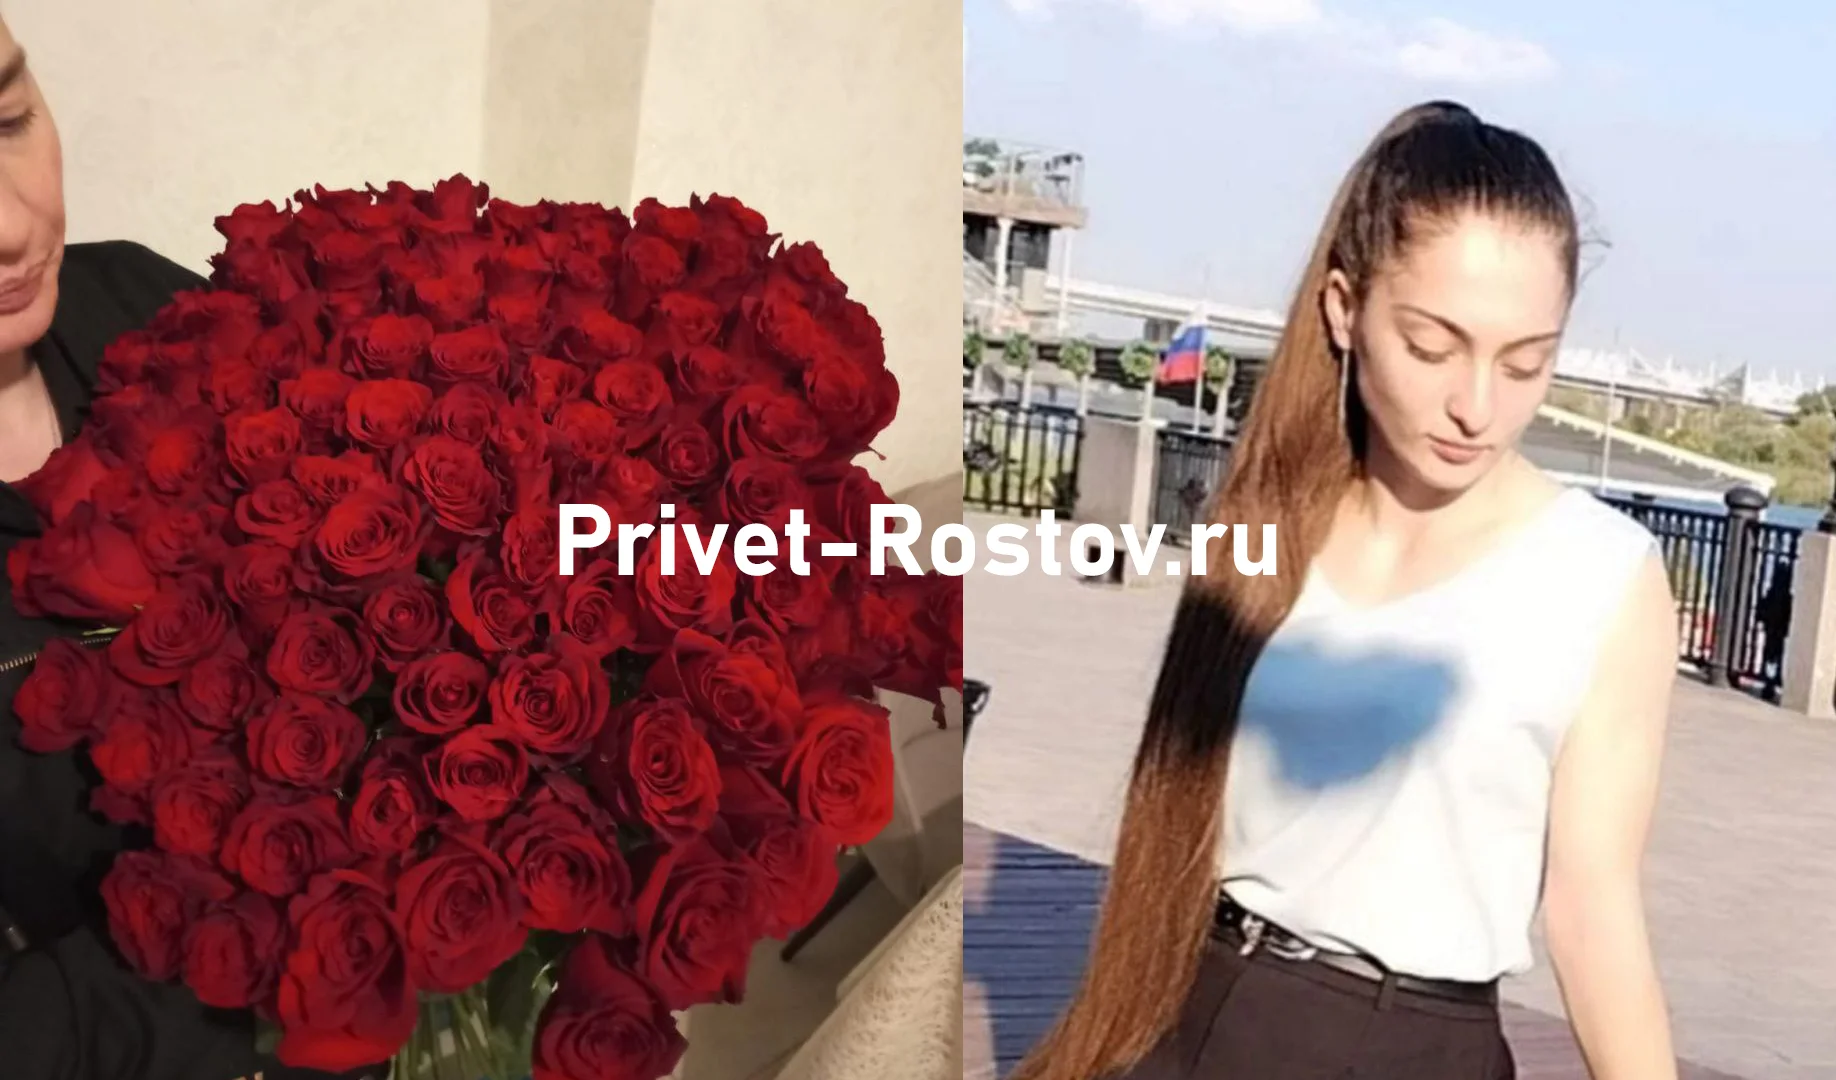 Осетинский поклонник Анны Цомартовой подарил ее маме букет алых роз